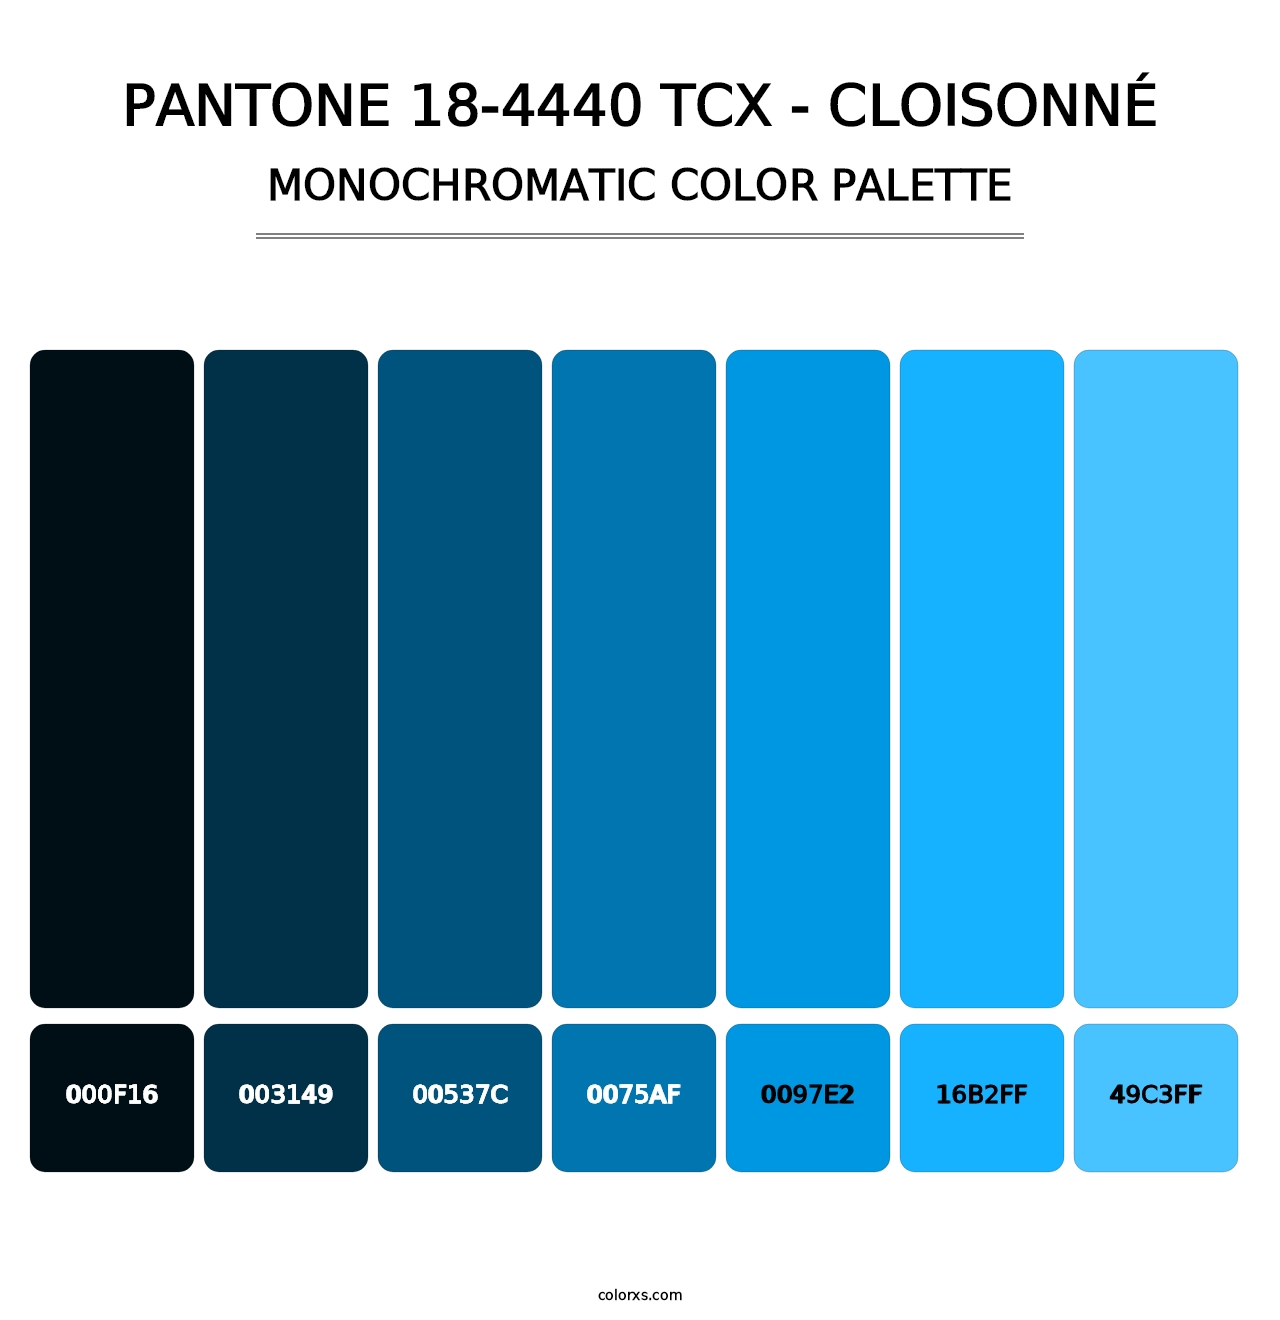 PANTONE 18-4440 TCX - Cloisonné - Monochromatic Color Palette